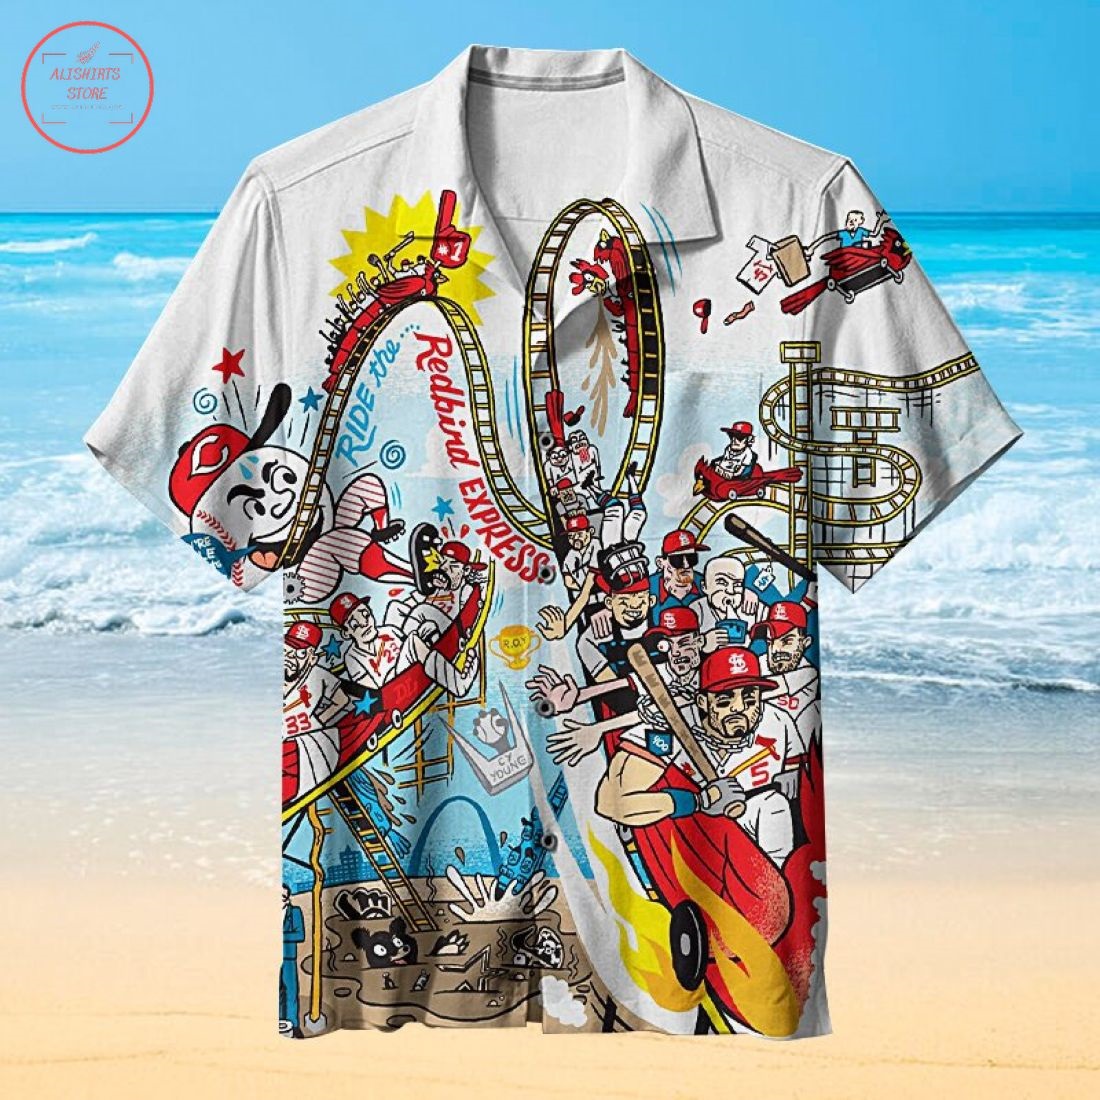 The amazing St. Louis Cardinals Hawaiian Shirt